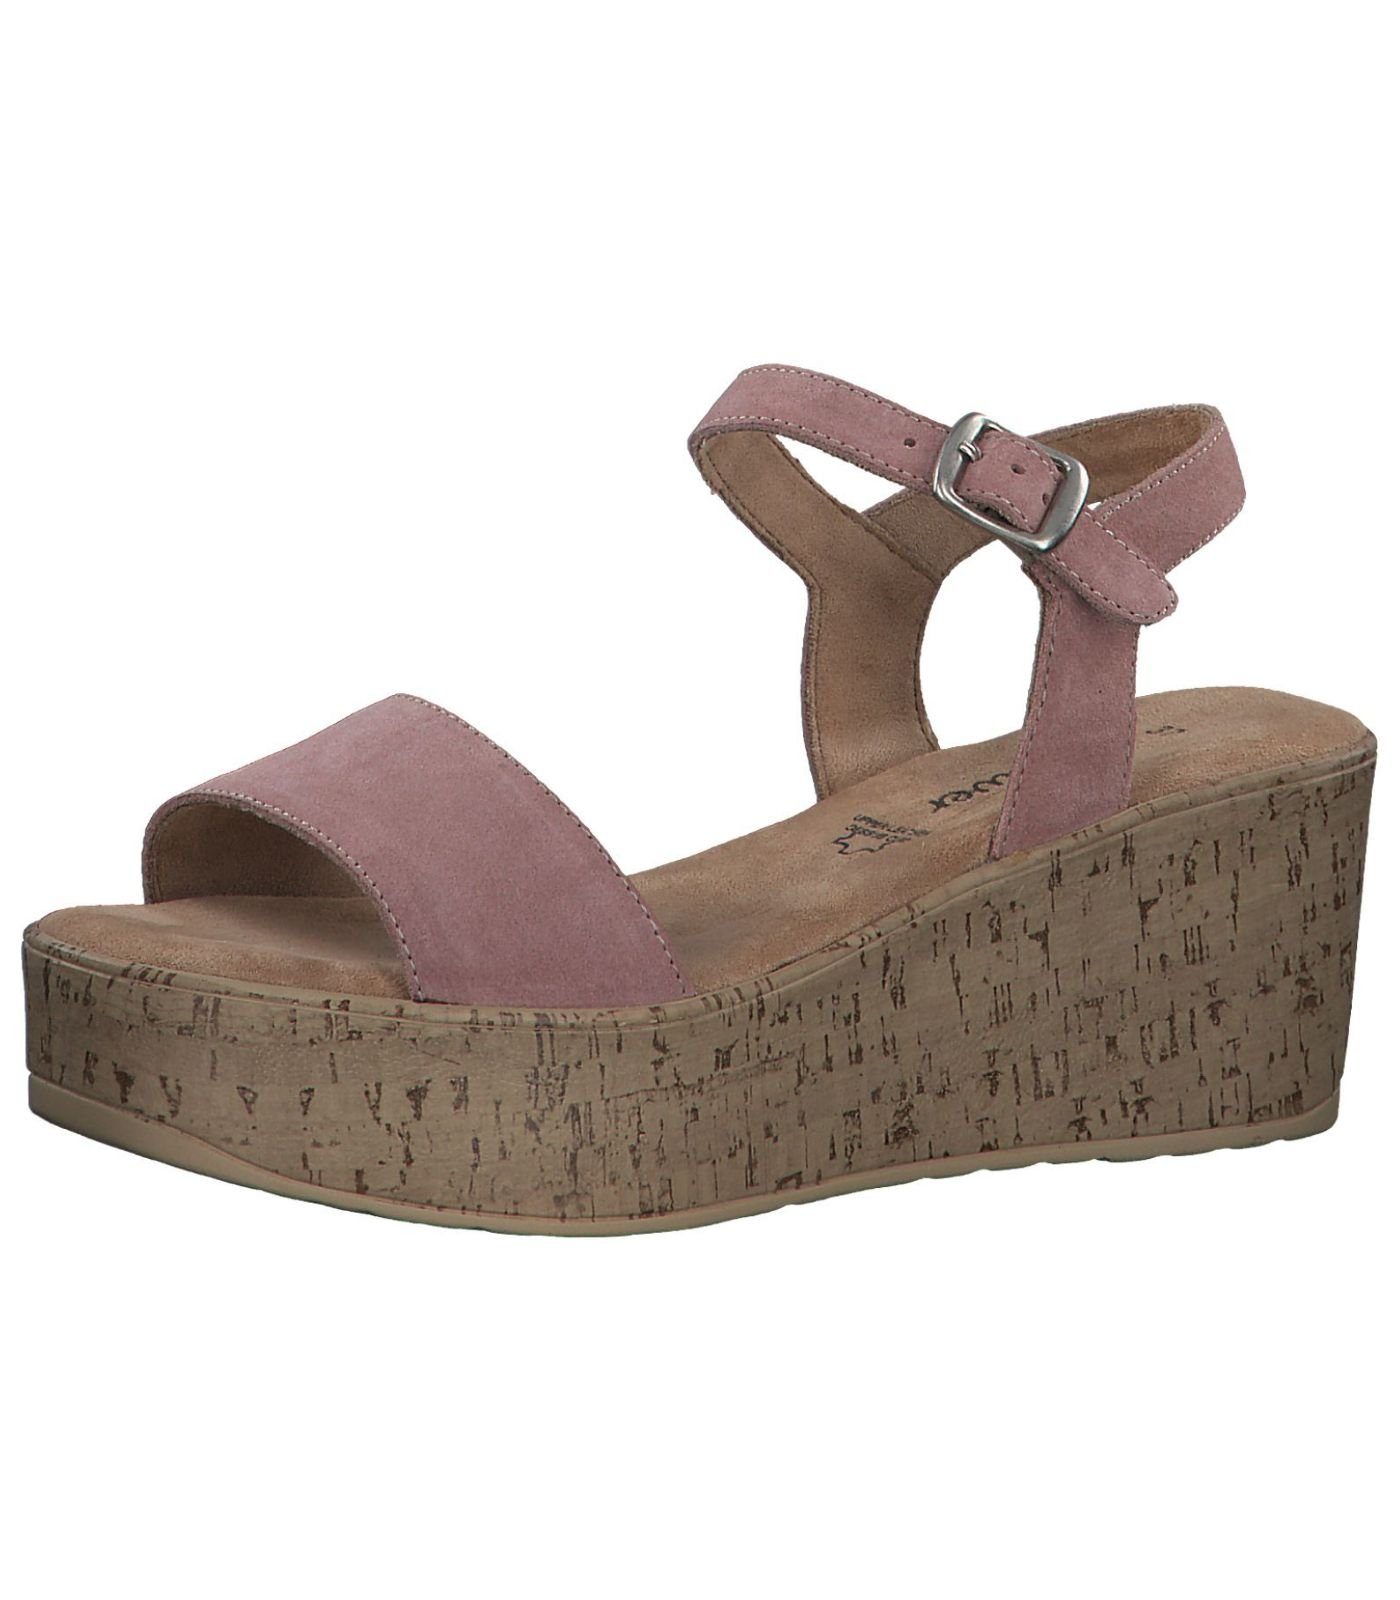 Sandaletten in rosa & pink online kaufen | OTTO